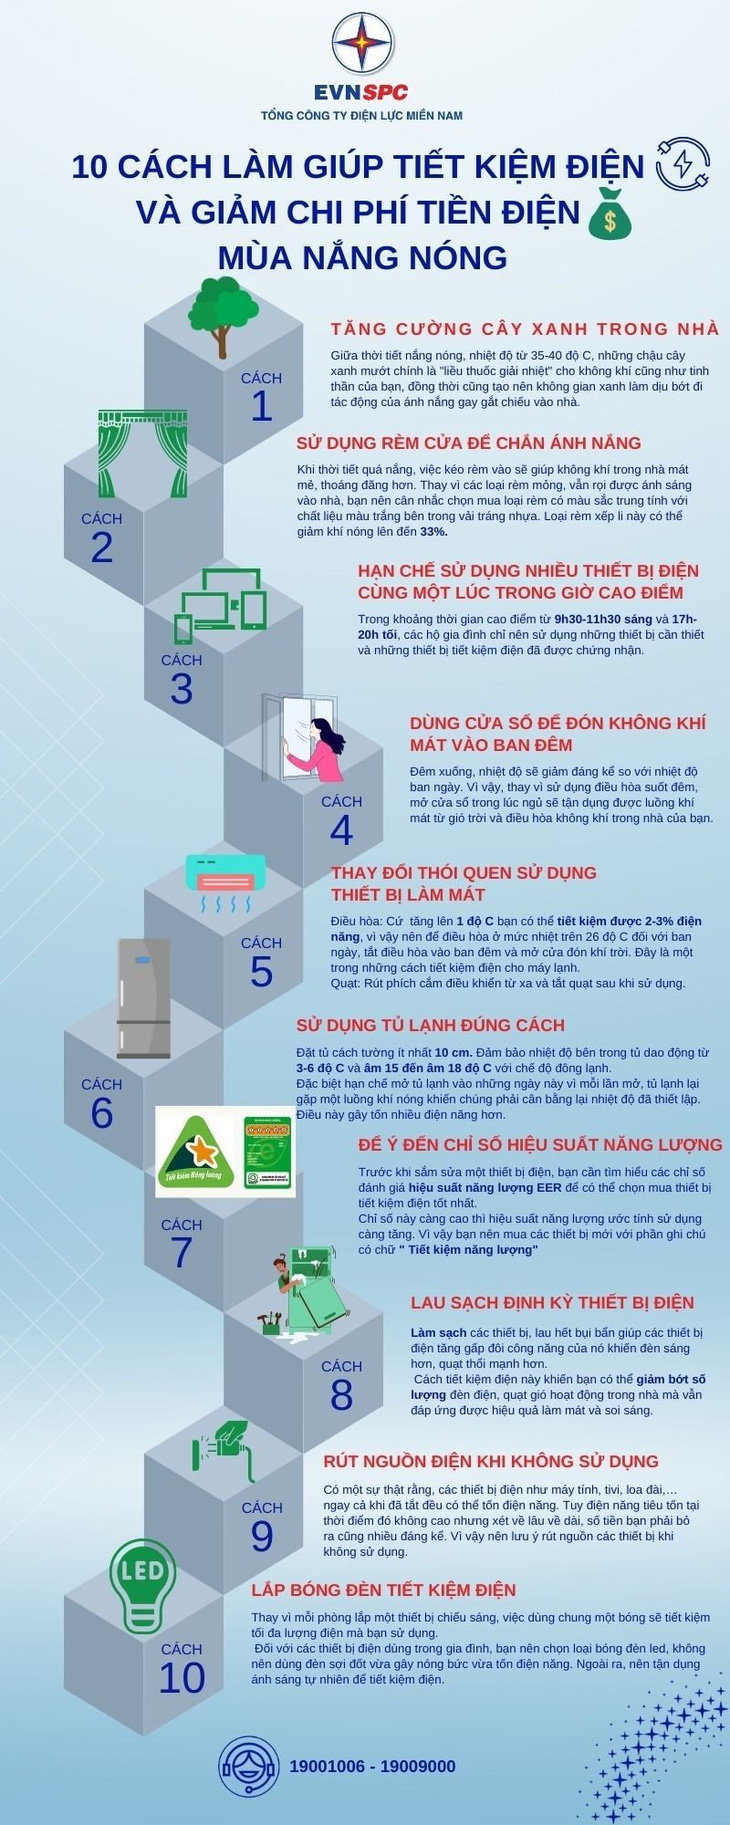 10 cách làm giúp tiết kiệm điện và giảm chi phí tiền điện mùa nắng nóng - Ảnh 1.